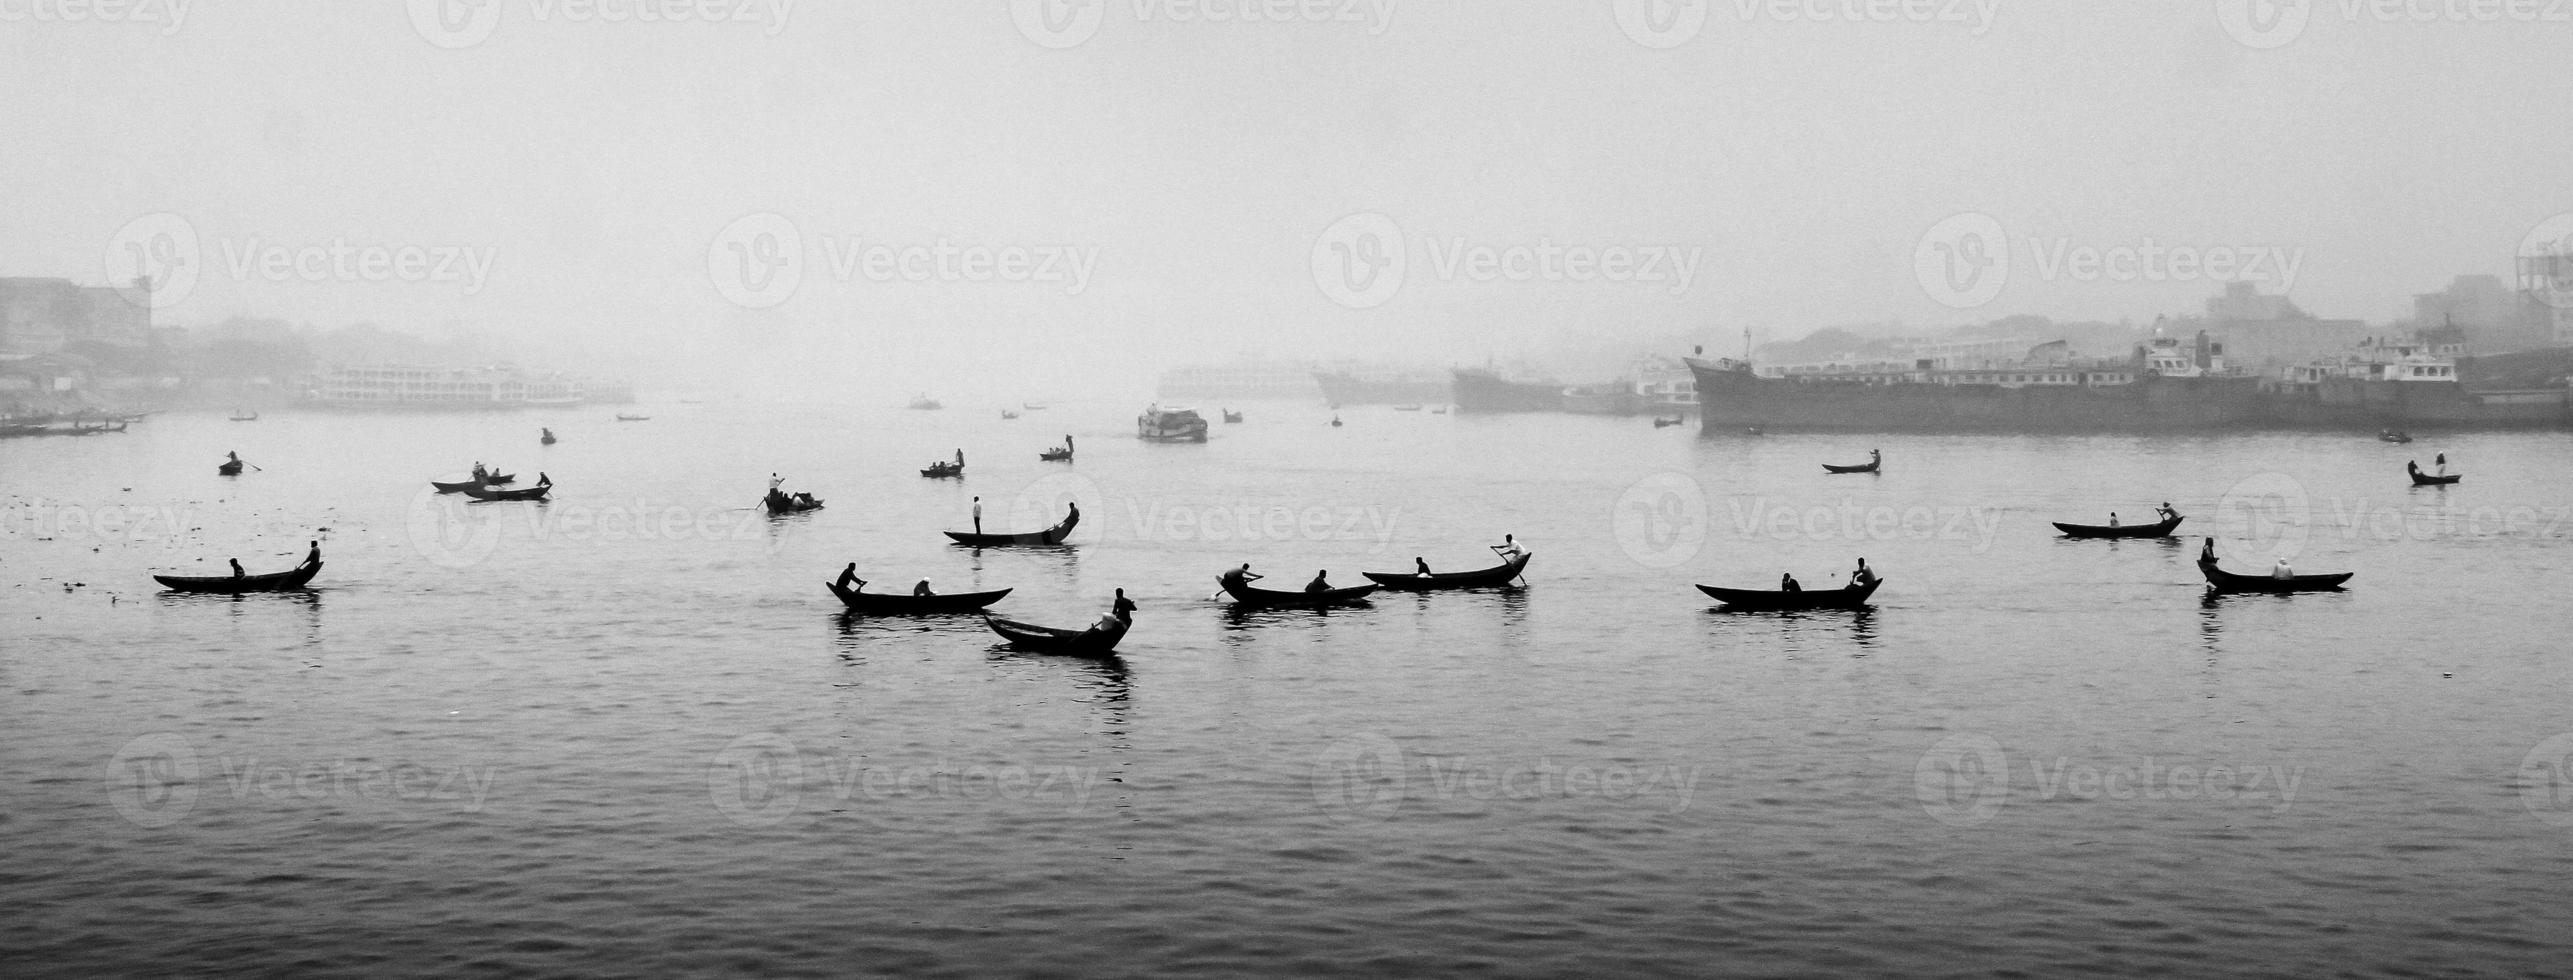 in de 's middags middag, mensen zijn kruispunt de rivier- door boot en deze jaar de mist van de winter is overspoeld in de rivier- buriganga. foto